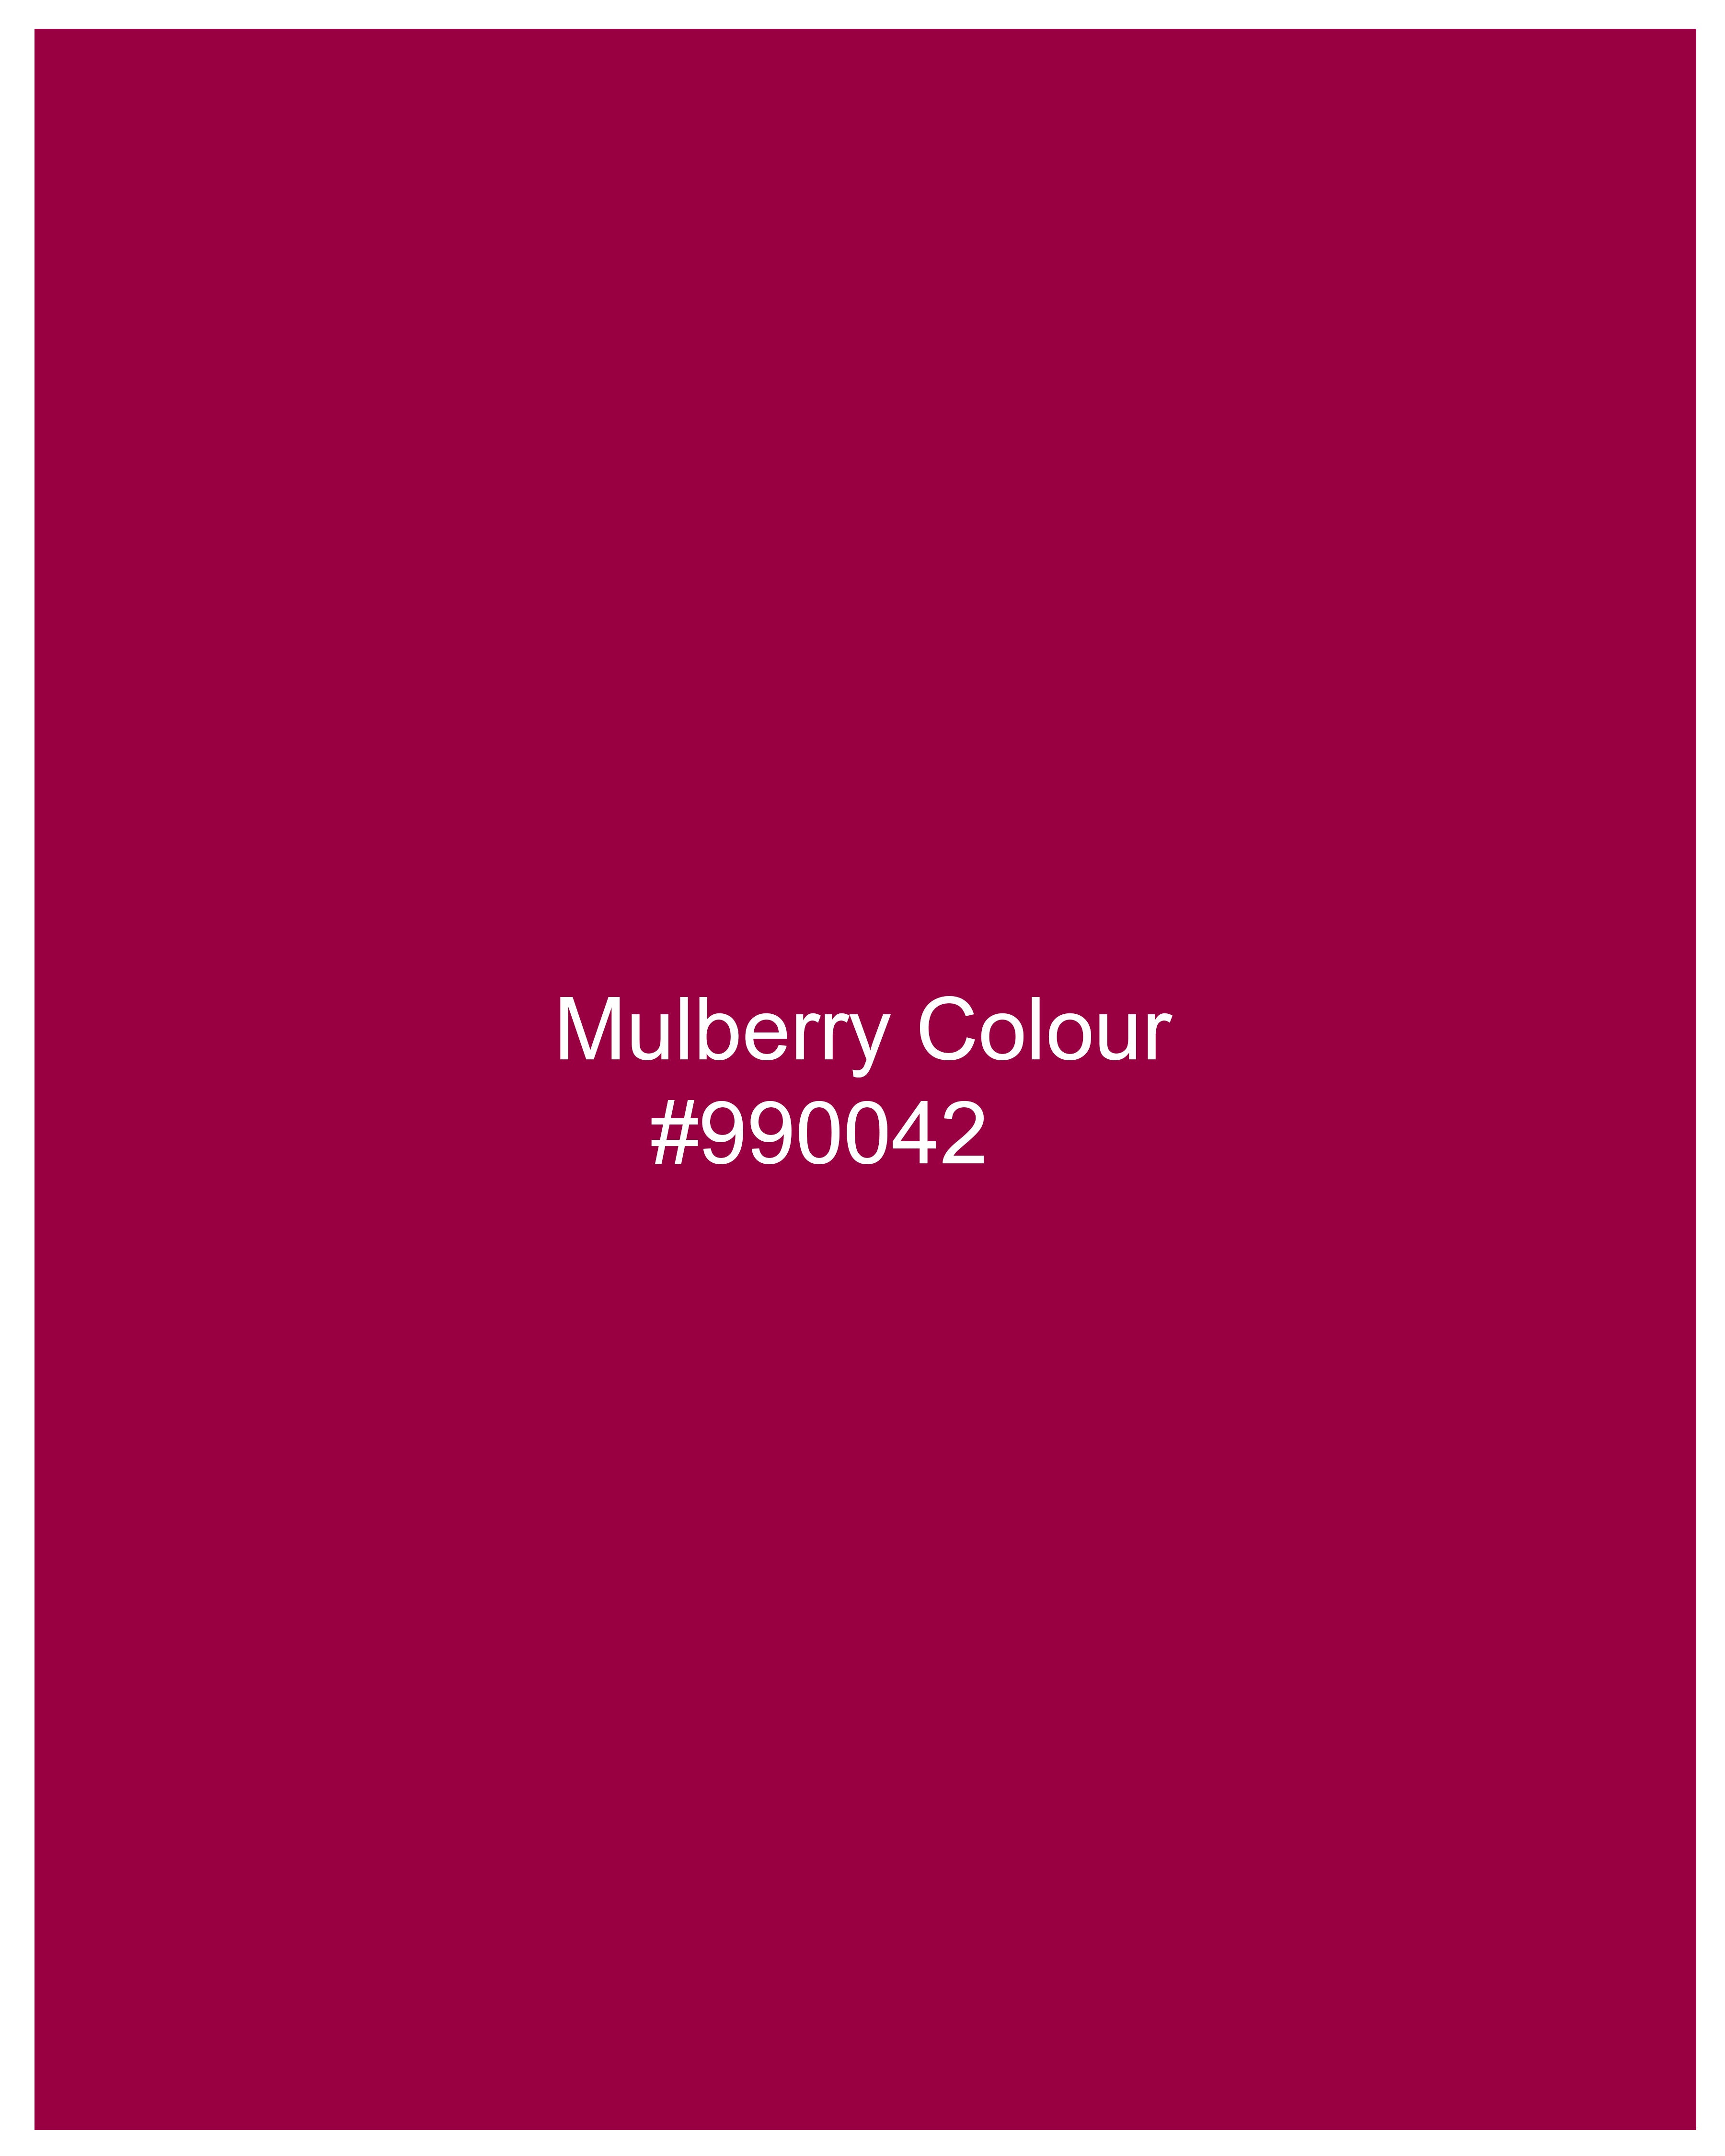 Mulberry Pink Viscose Crop Top WTP028-32, WTP028-34, WTP028-36, WTP028-38, WTP028-40, WTP028-42